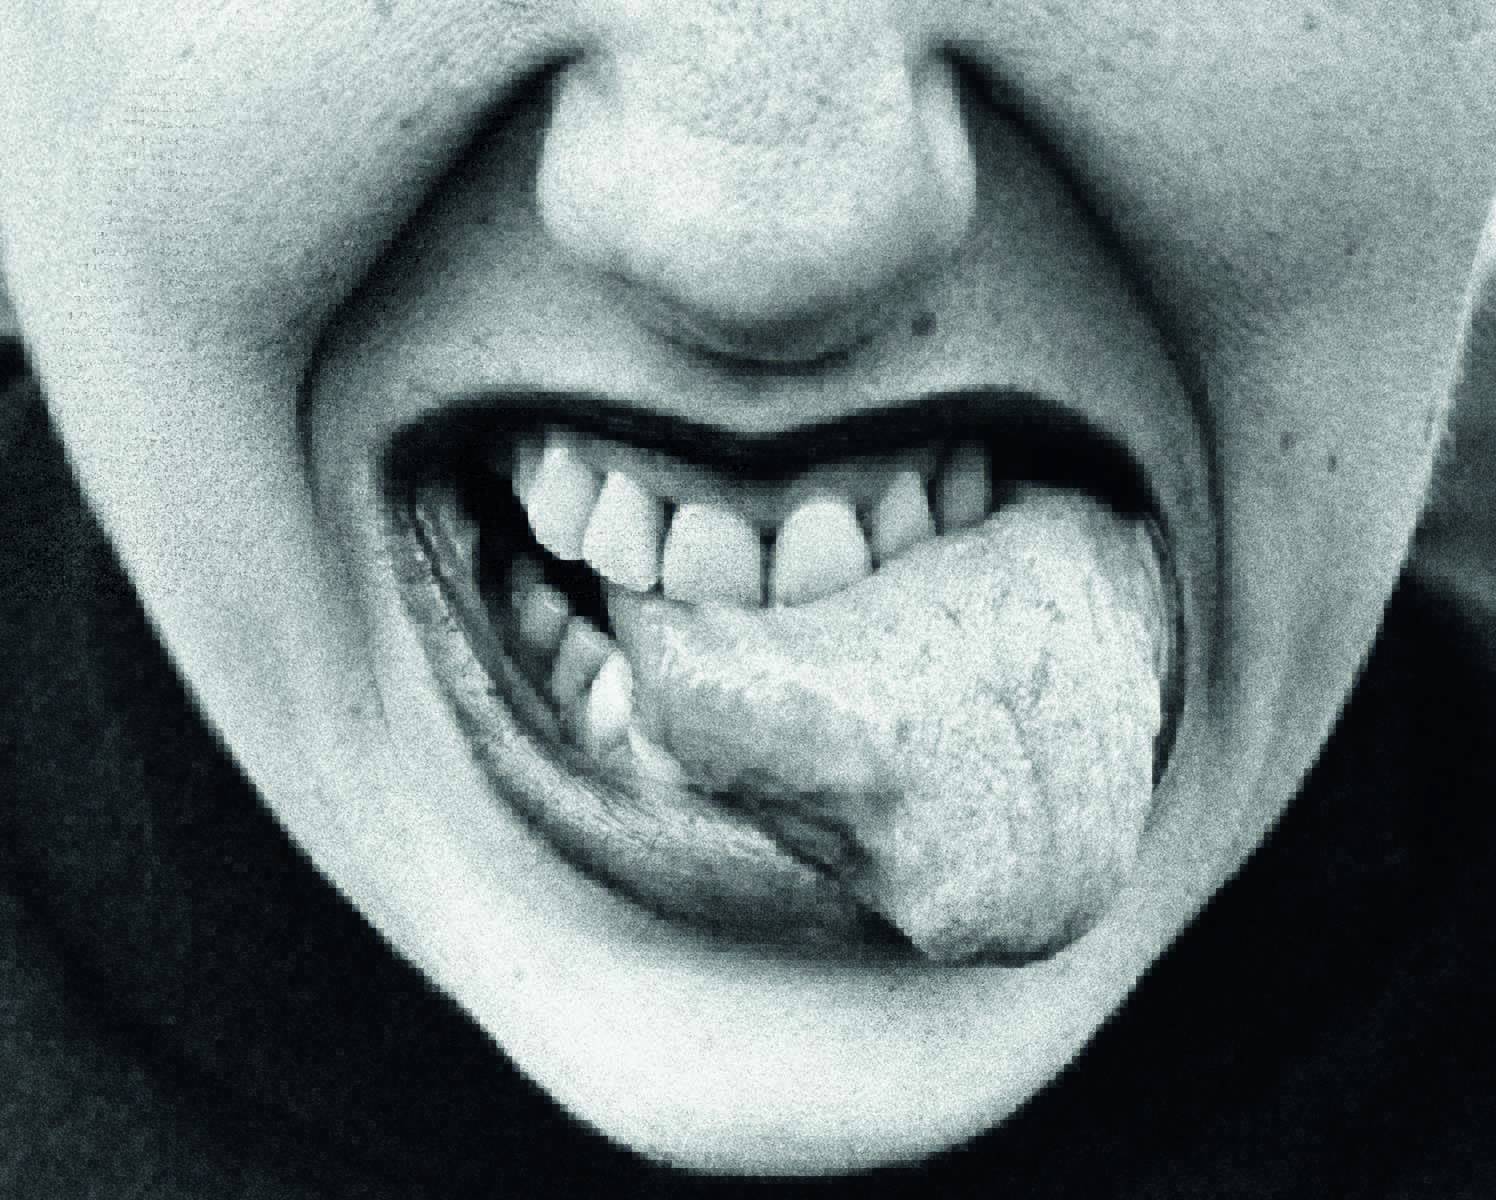 Imagem mostra boca de mulher com os dentes mordendo a própria língua.